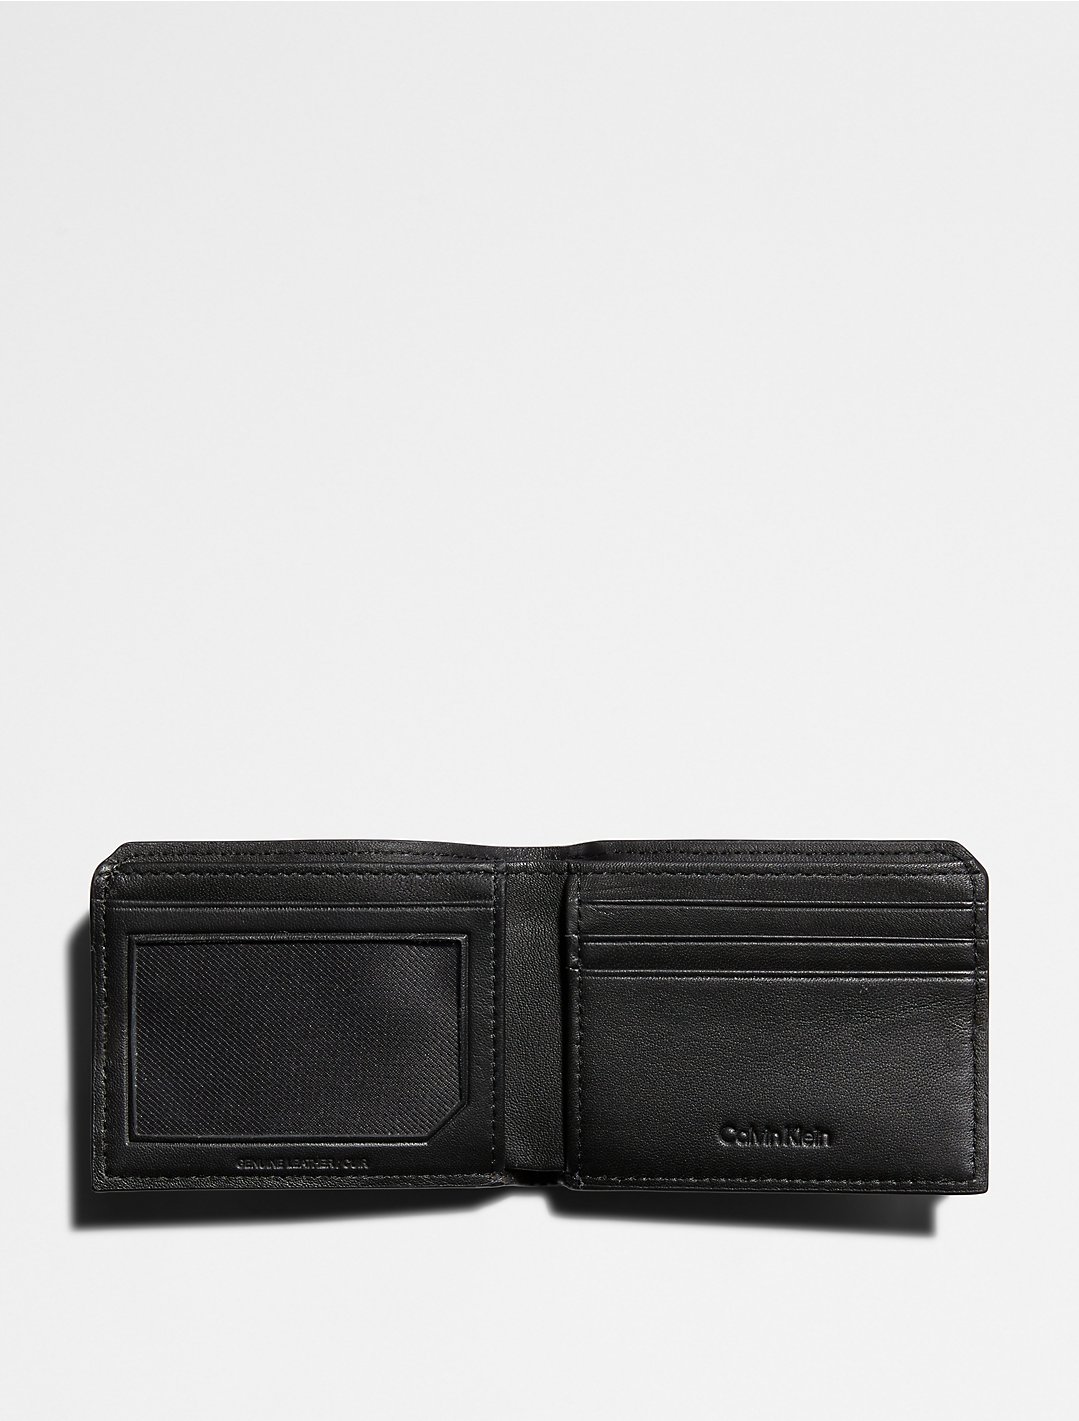 trog debat Aas Saffiano Leather Slim Bifold Wallet | Calvin Klein